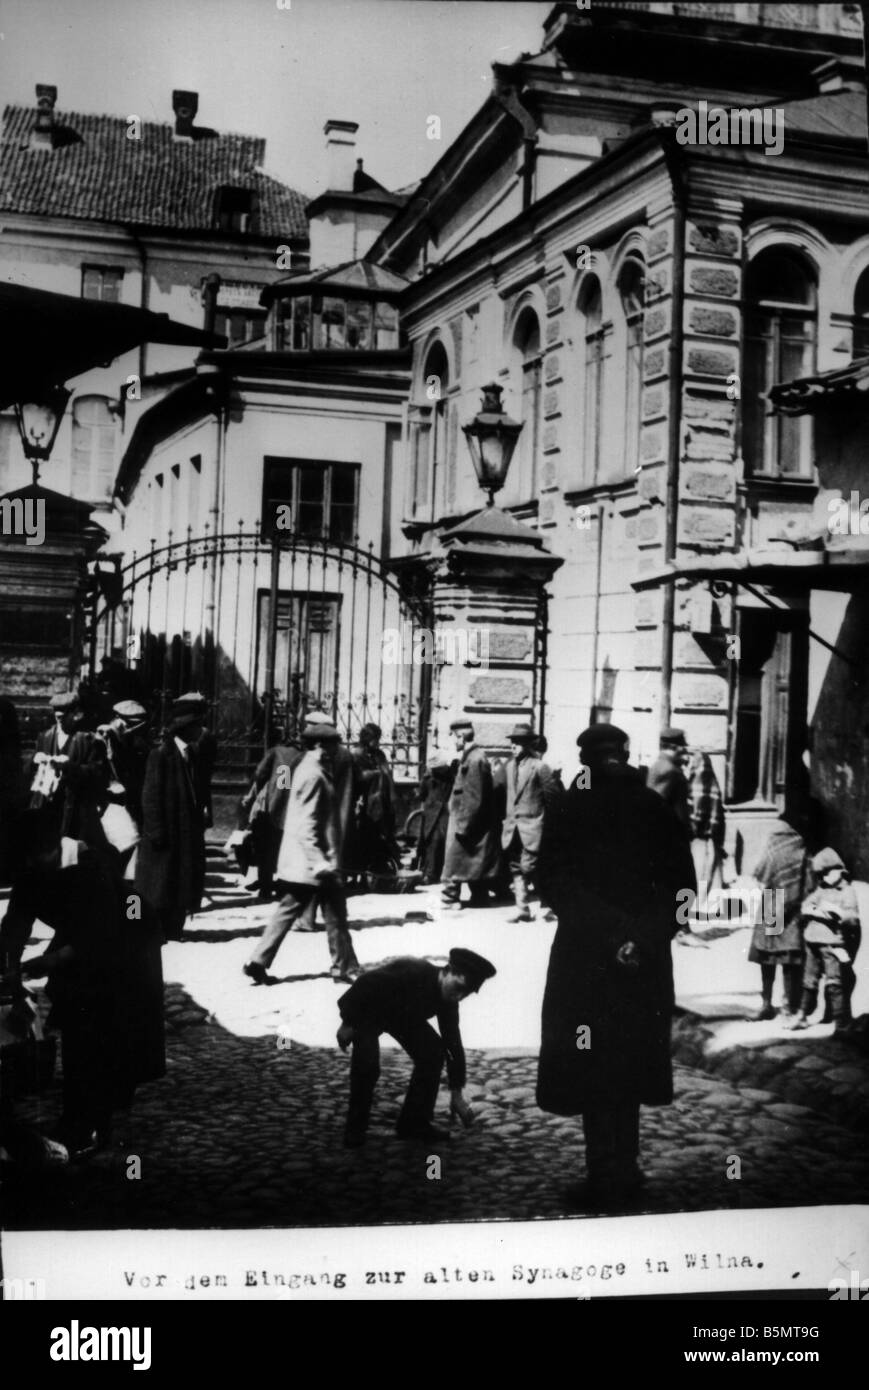 9È 1915 0 0 A1 7 ingresso di Wilna sinagoga 1915 Storia dell'Ebraismo ebrei orientali di fronte all'entrata della vecchia sinagoga Foto Stock